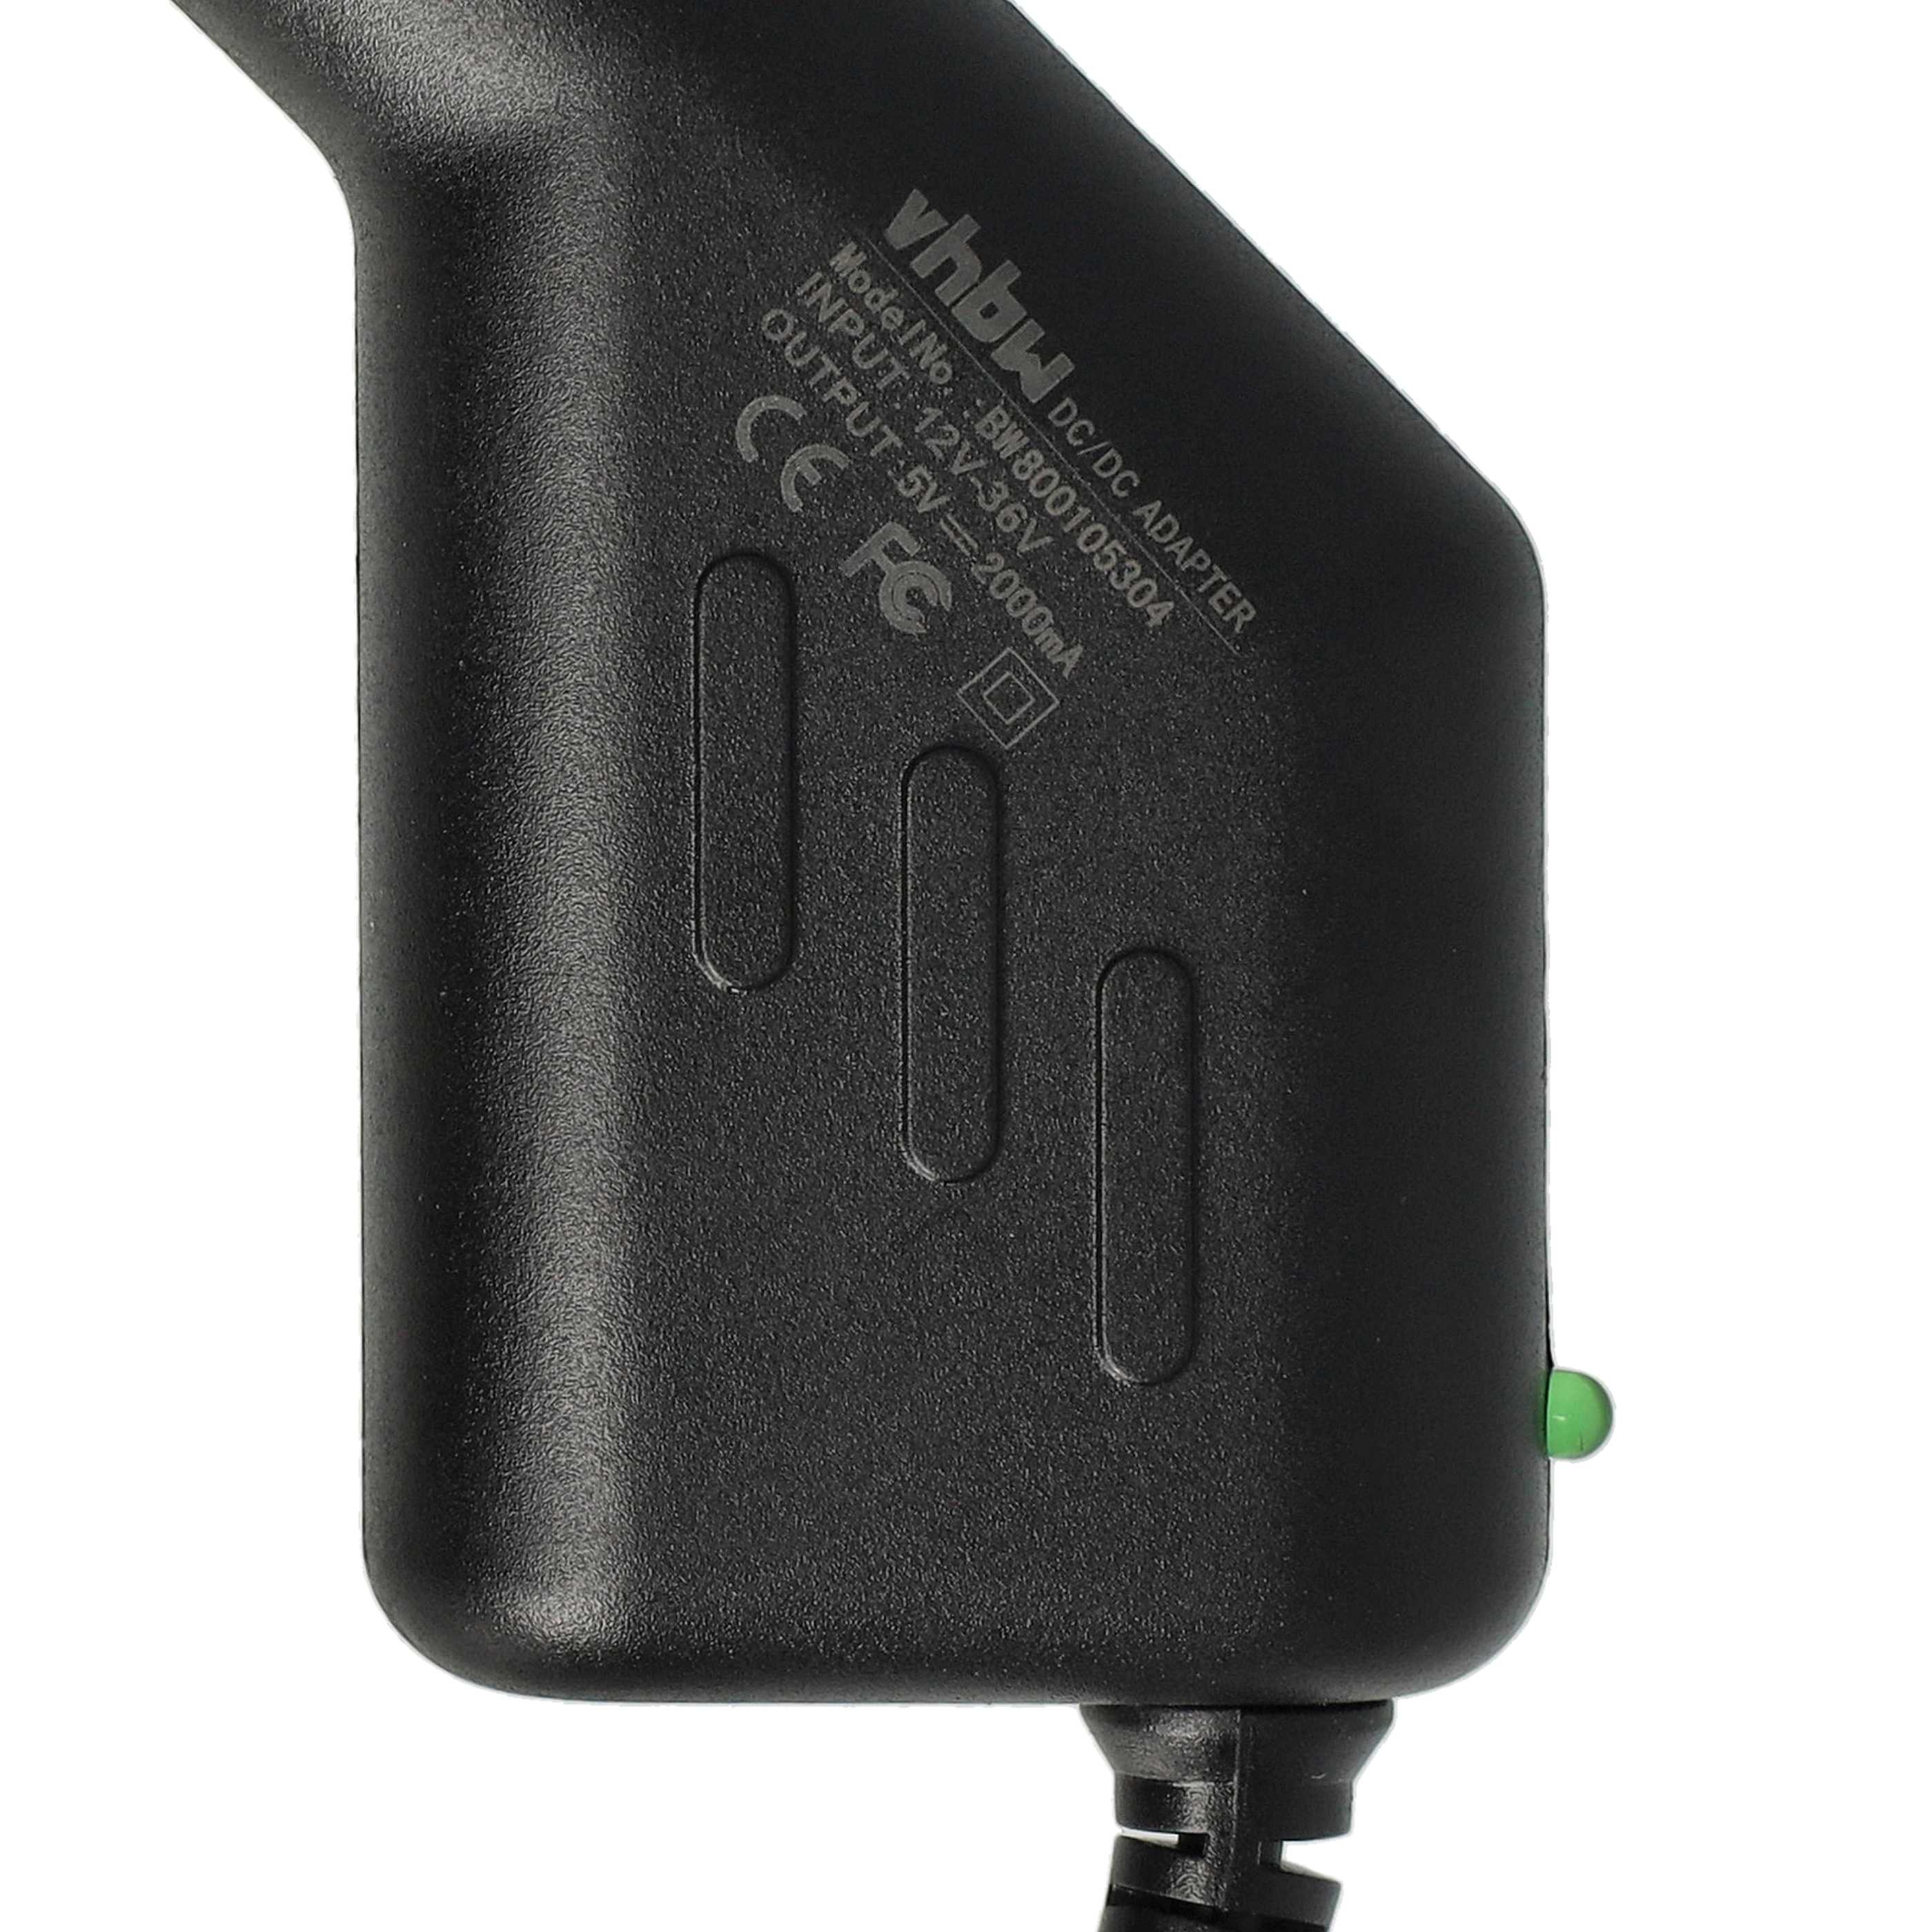 Ładowarka samochodowa Micro USB do urządzeń np. smartfona, nawigacji GPS Chic Olympia - 2,0 A